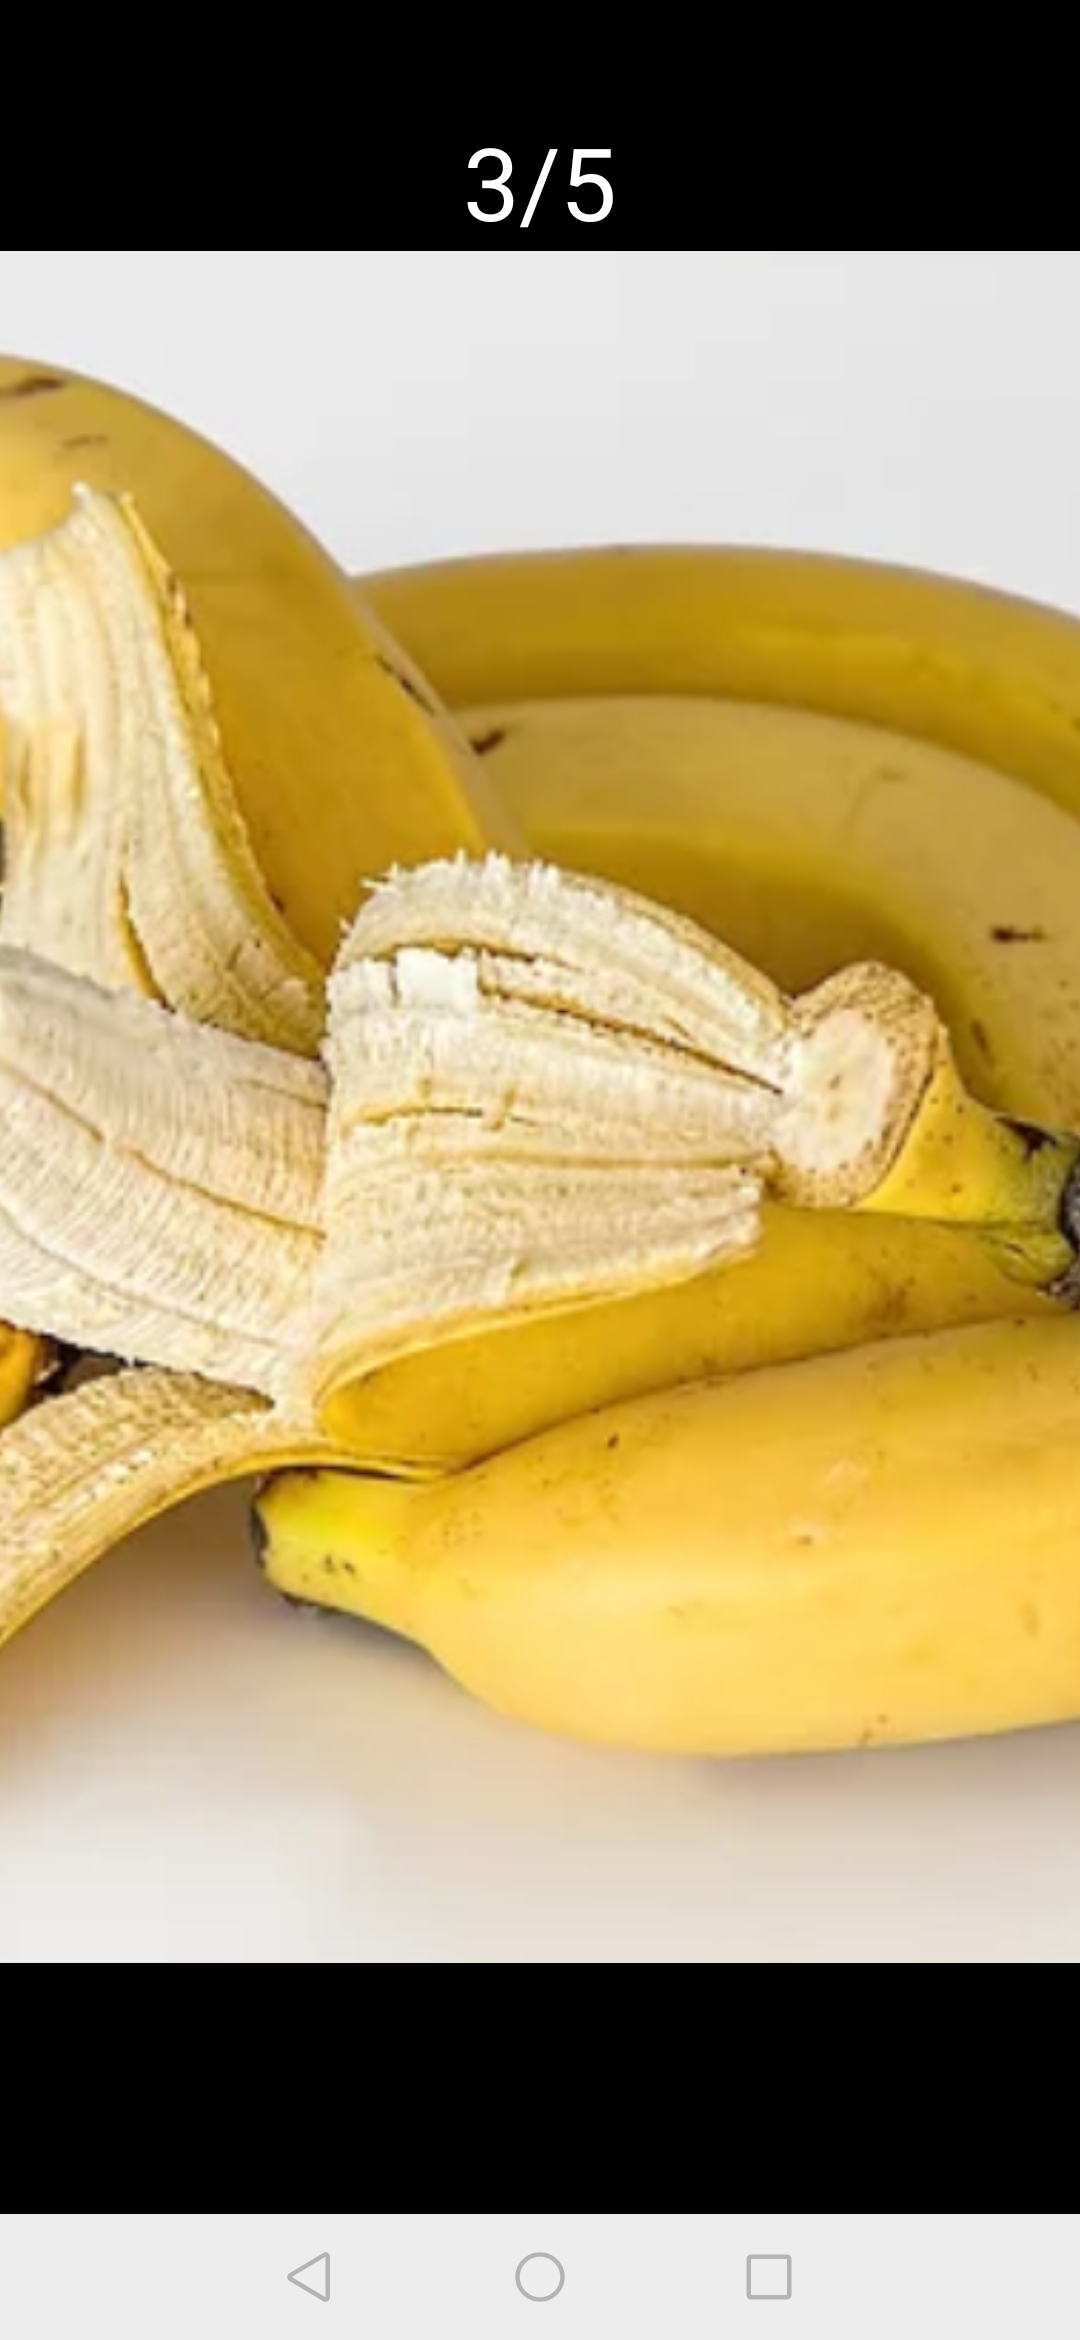 有三类人不适合吃香蕉:1血糖高的人2经常烧